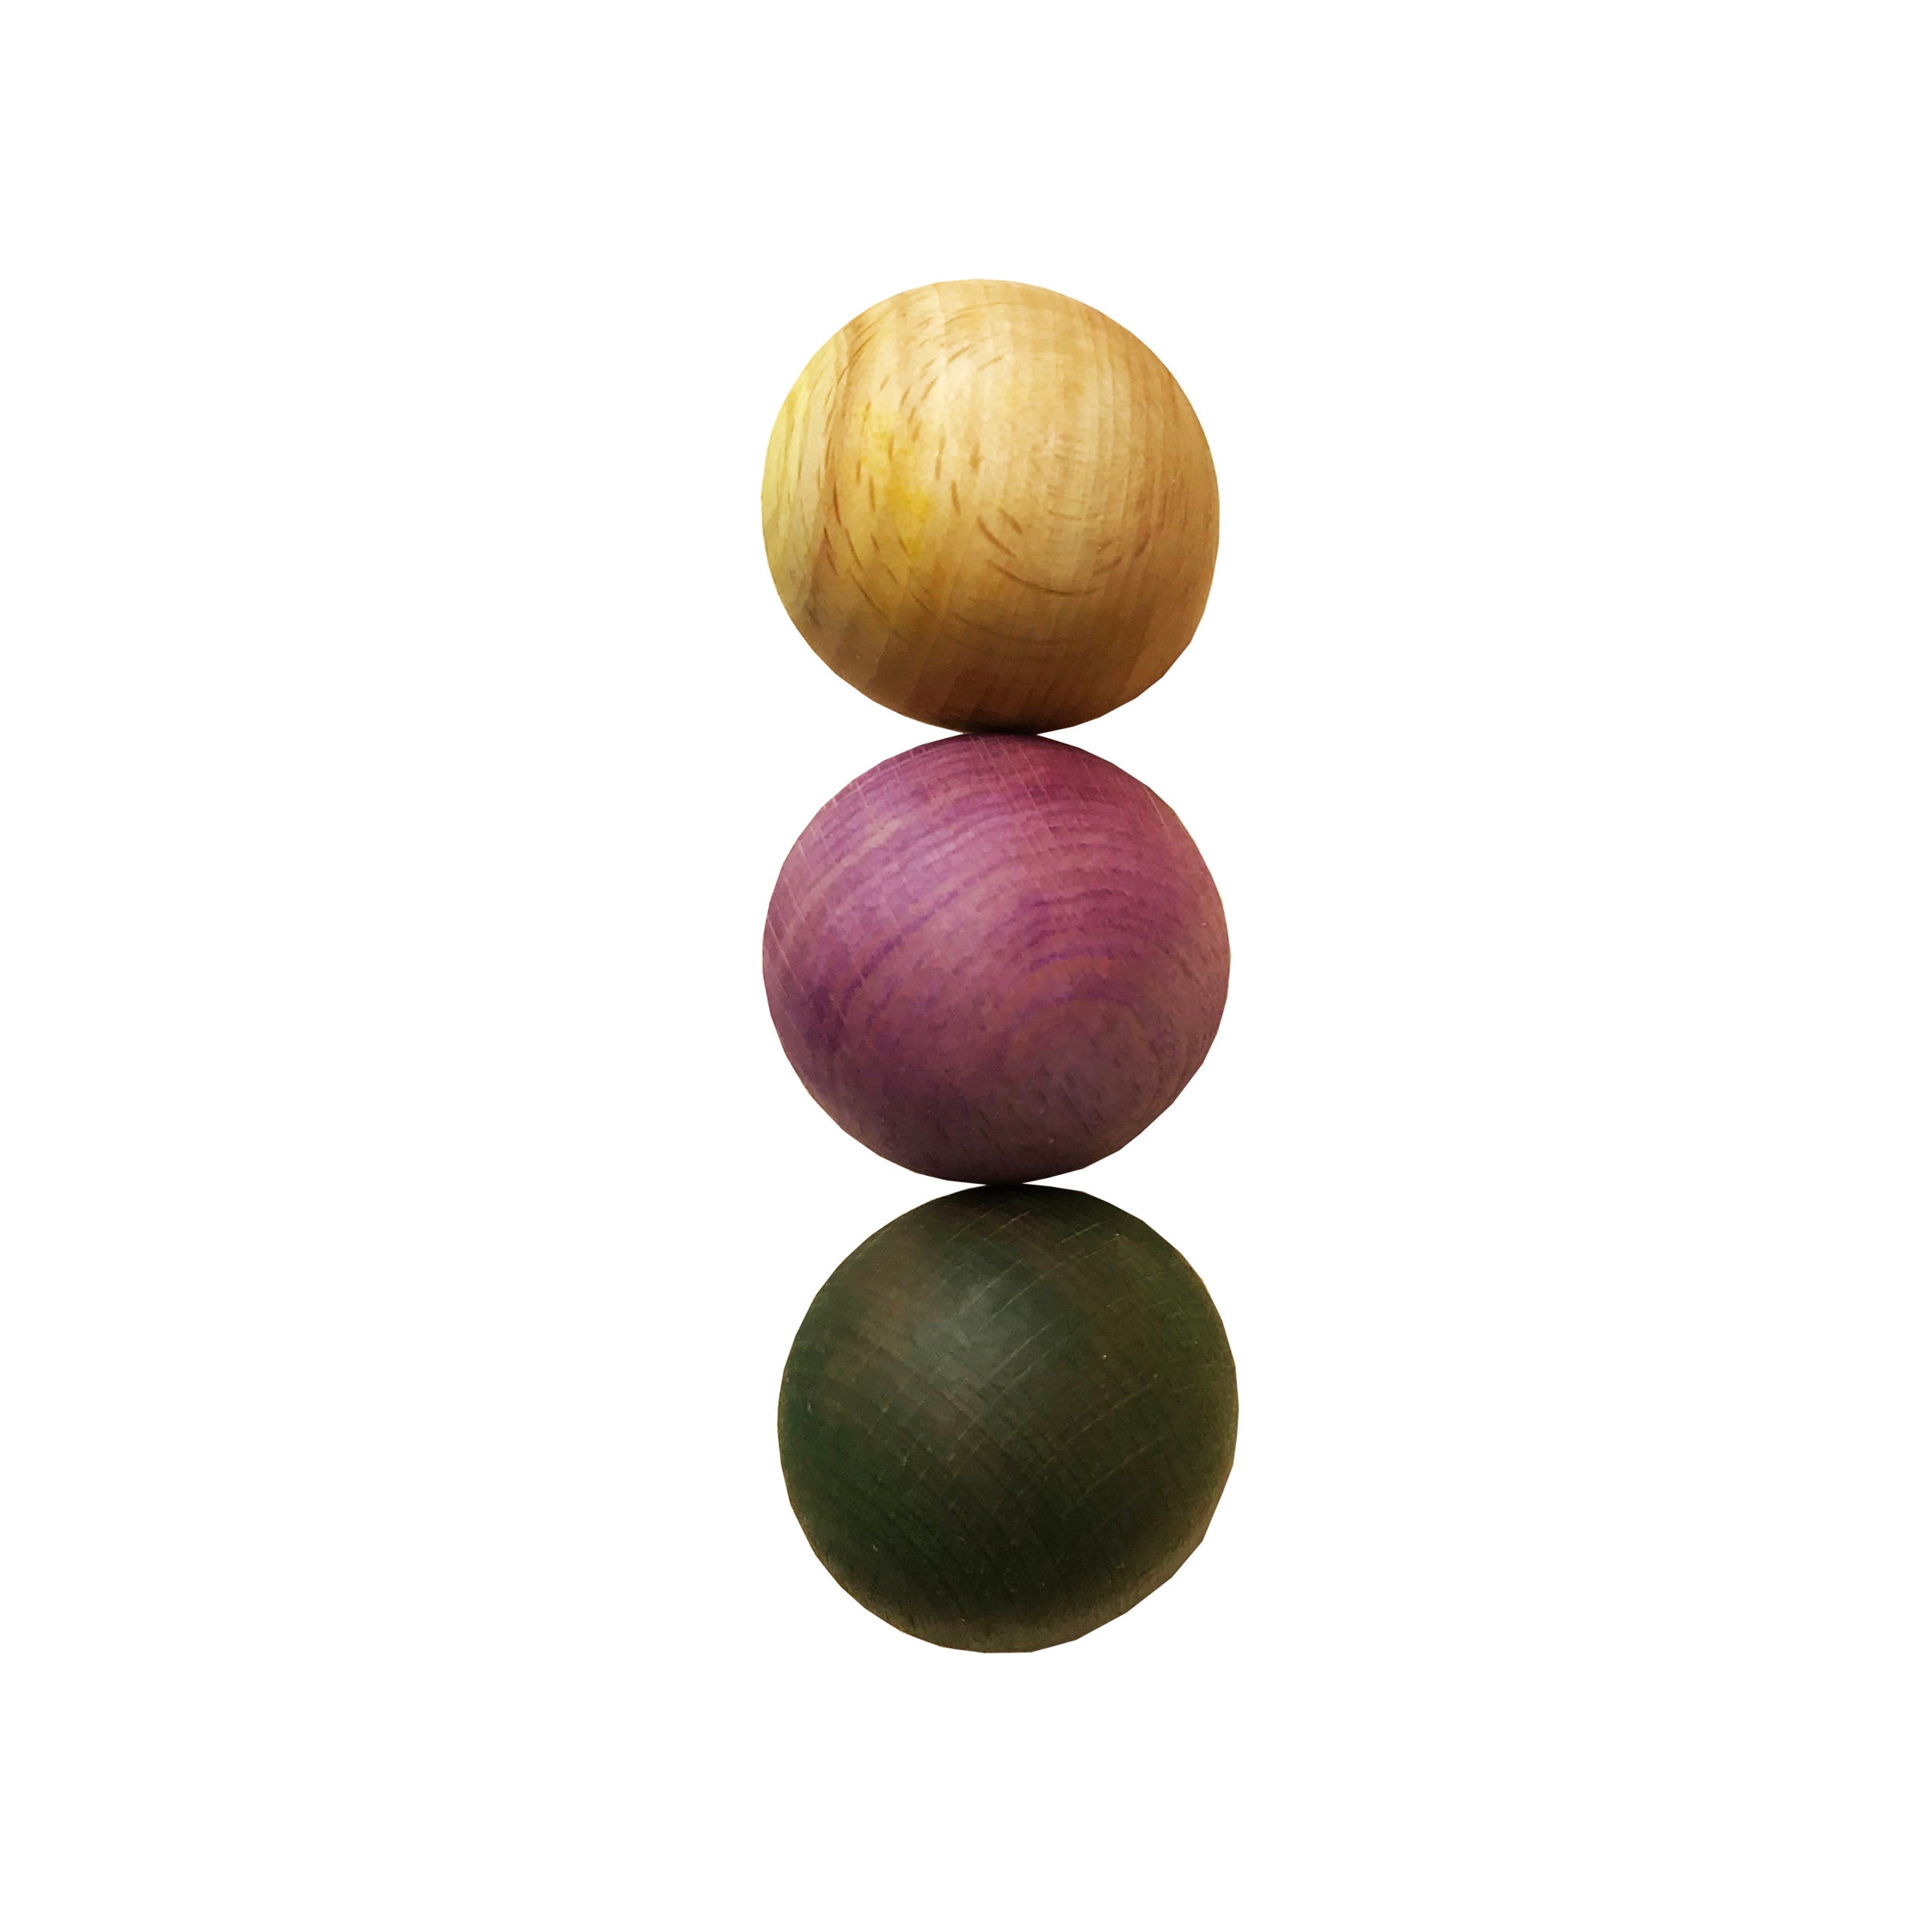 3 Wooden balls